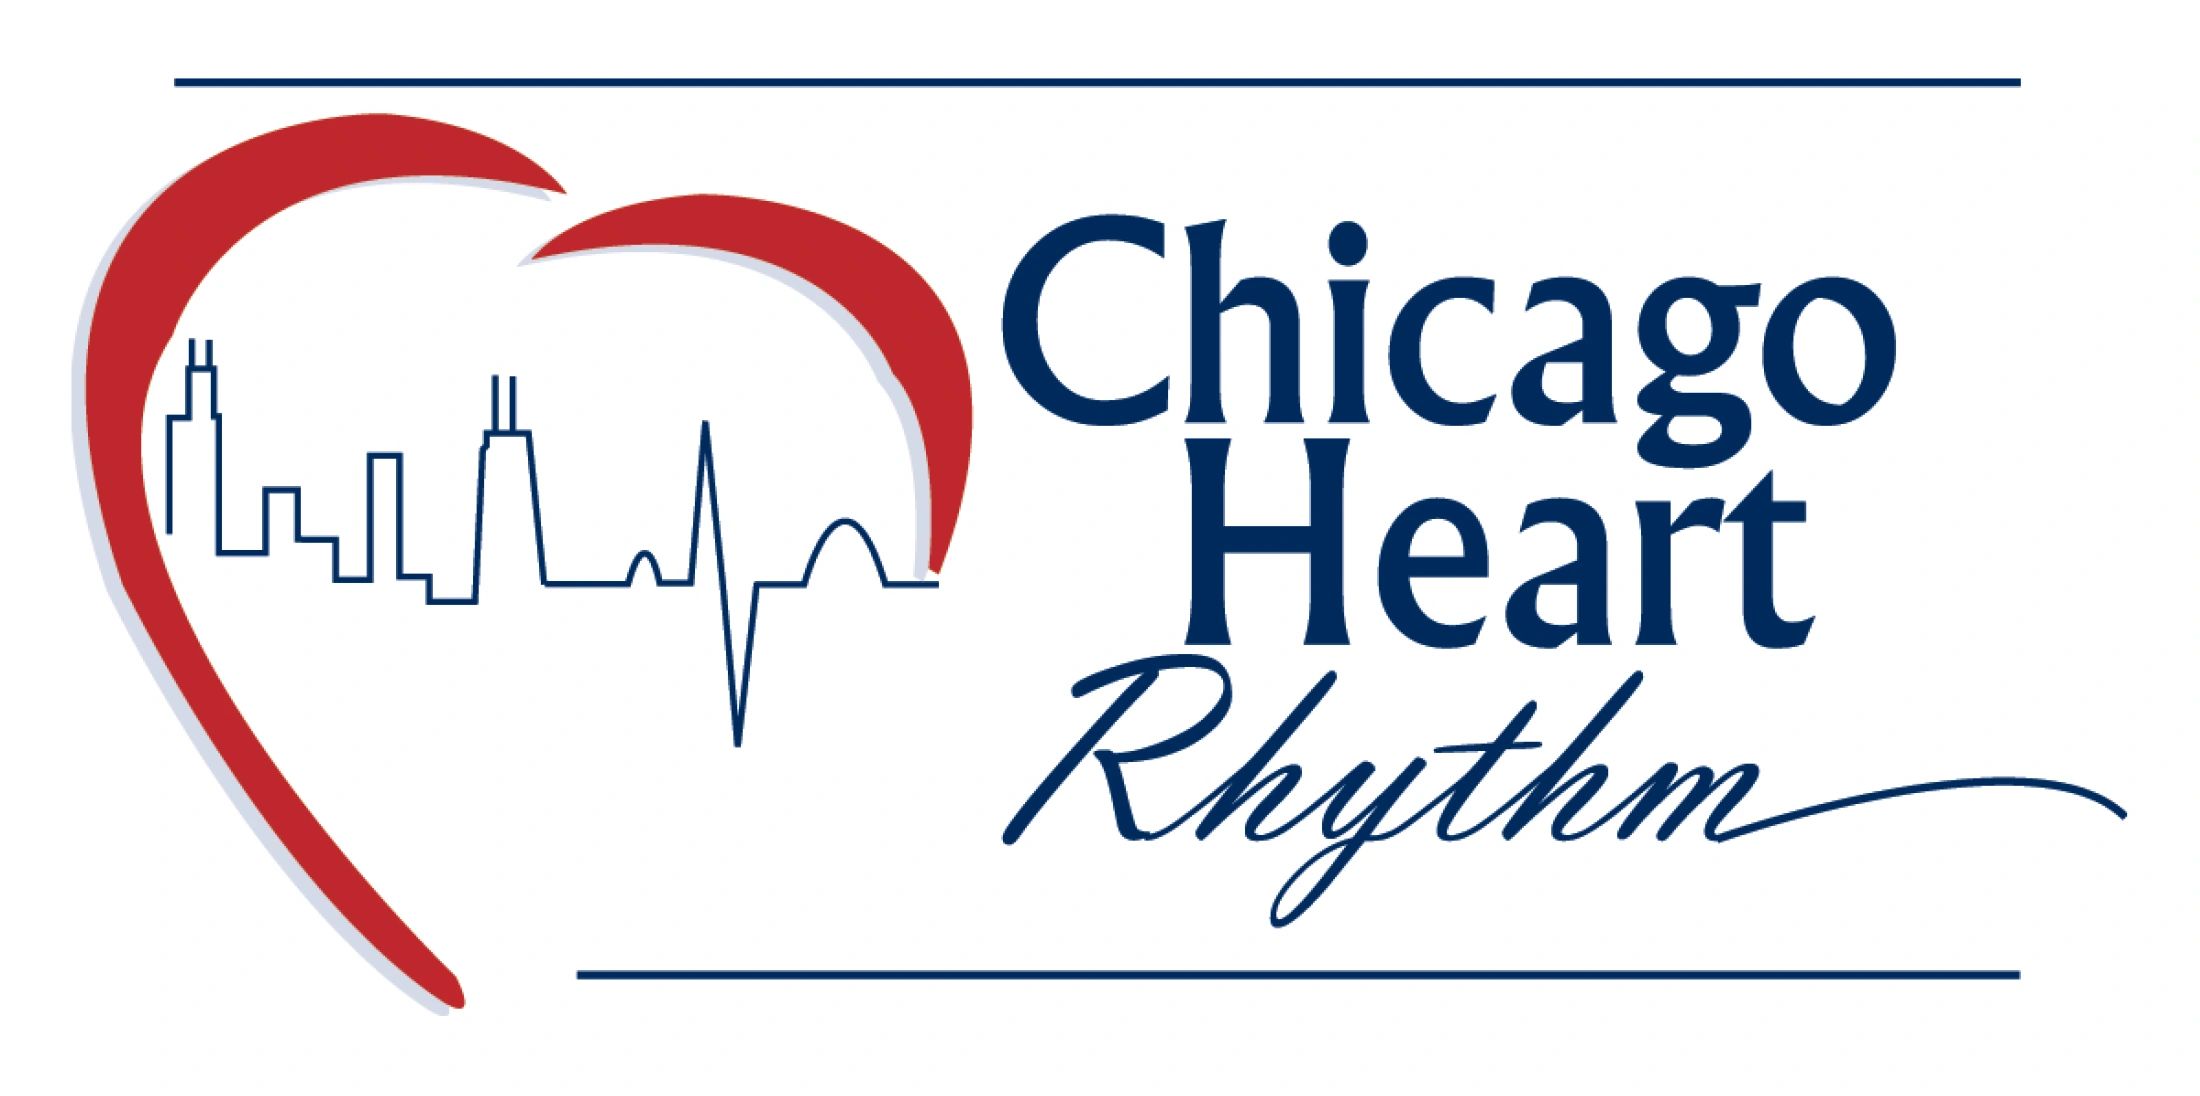 Chicago Heart Rhythm
Cardiac Electrophysiology
Samer Dibs, MD